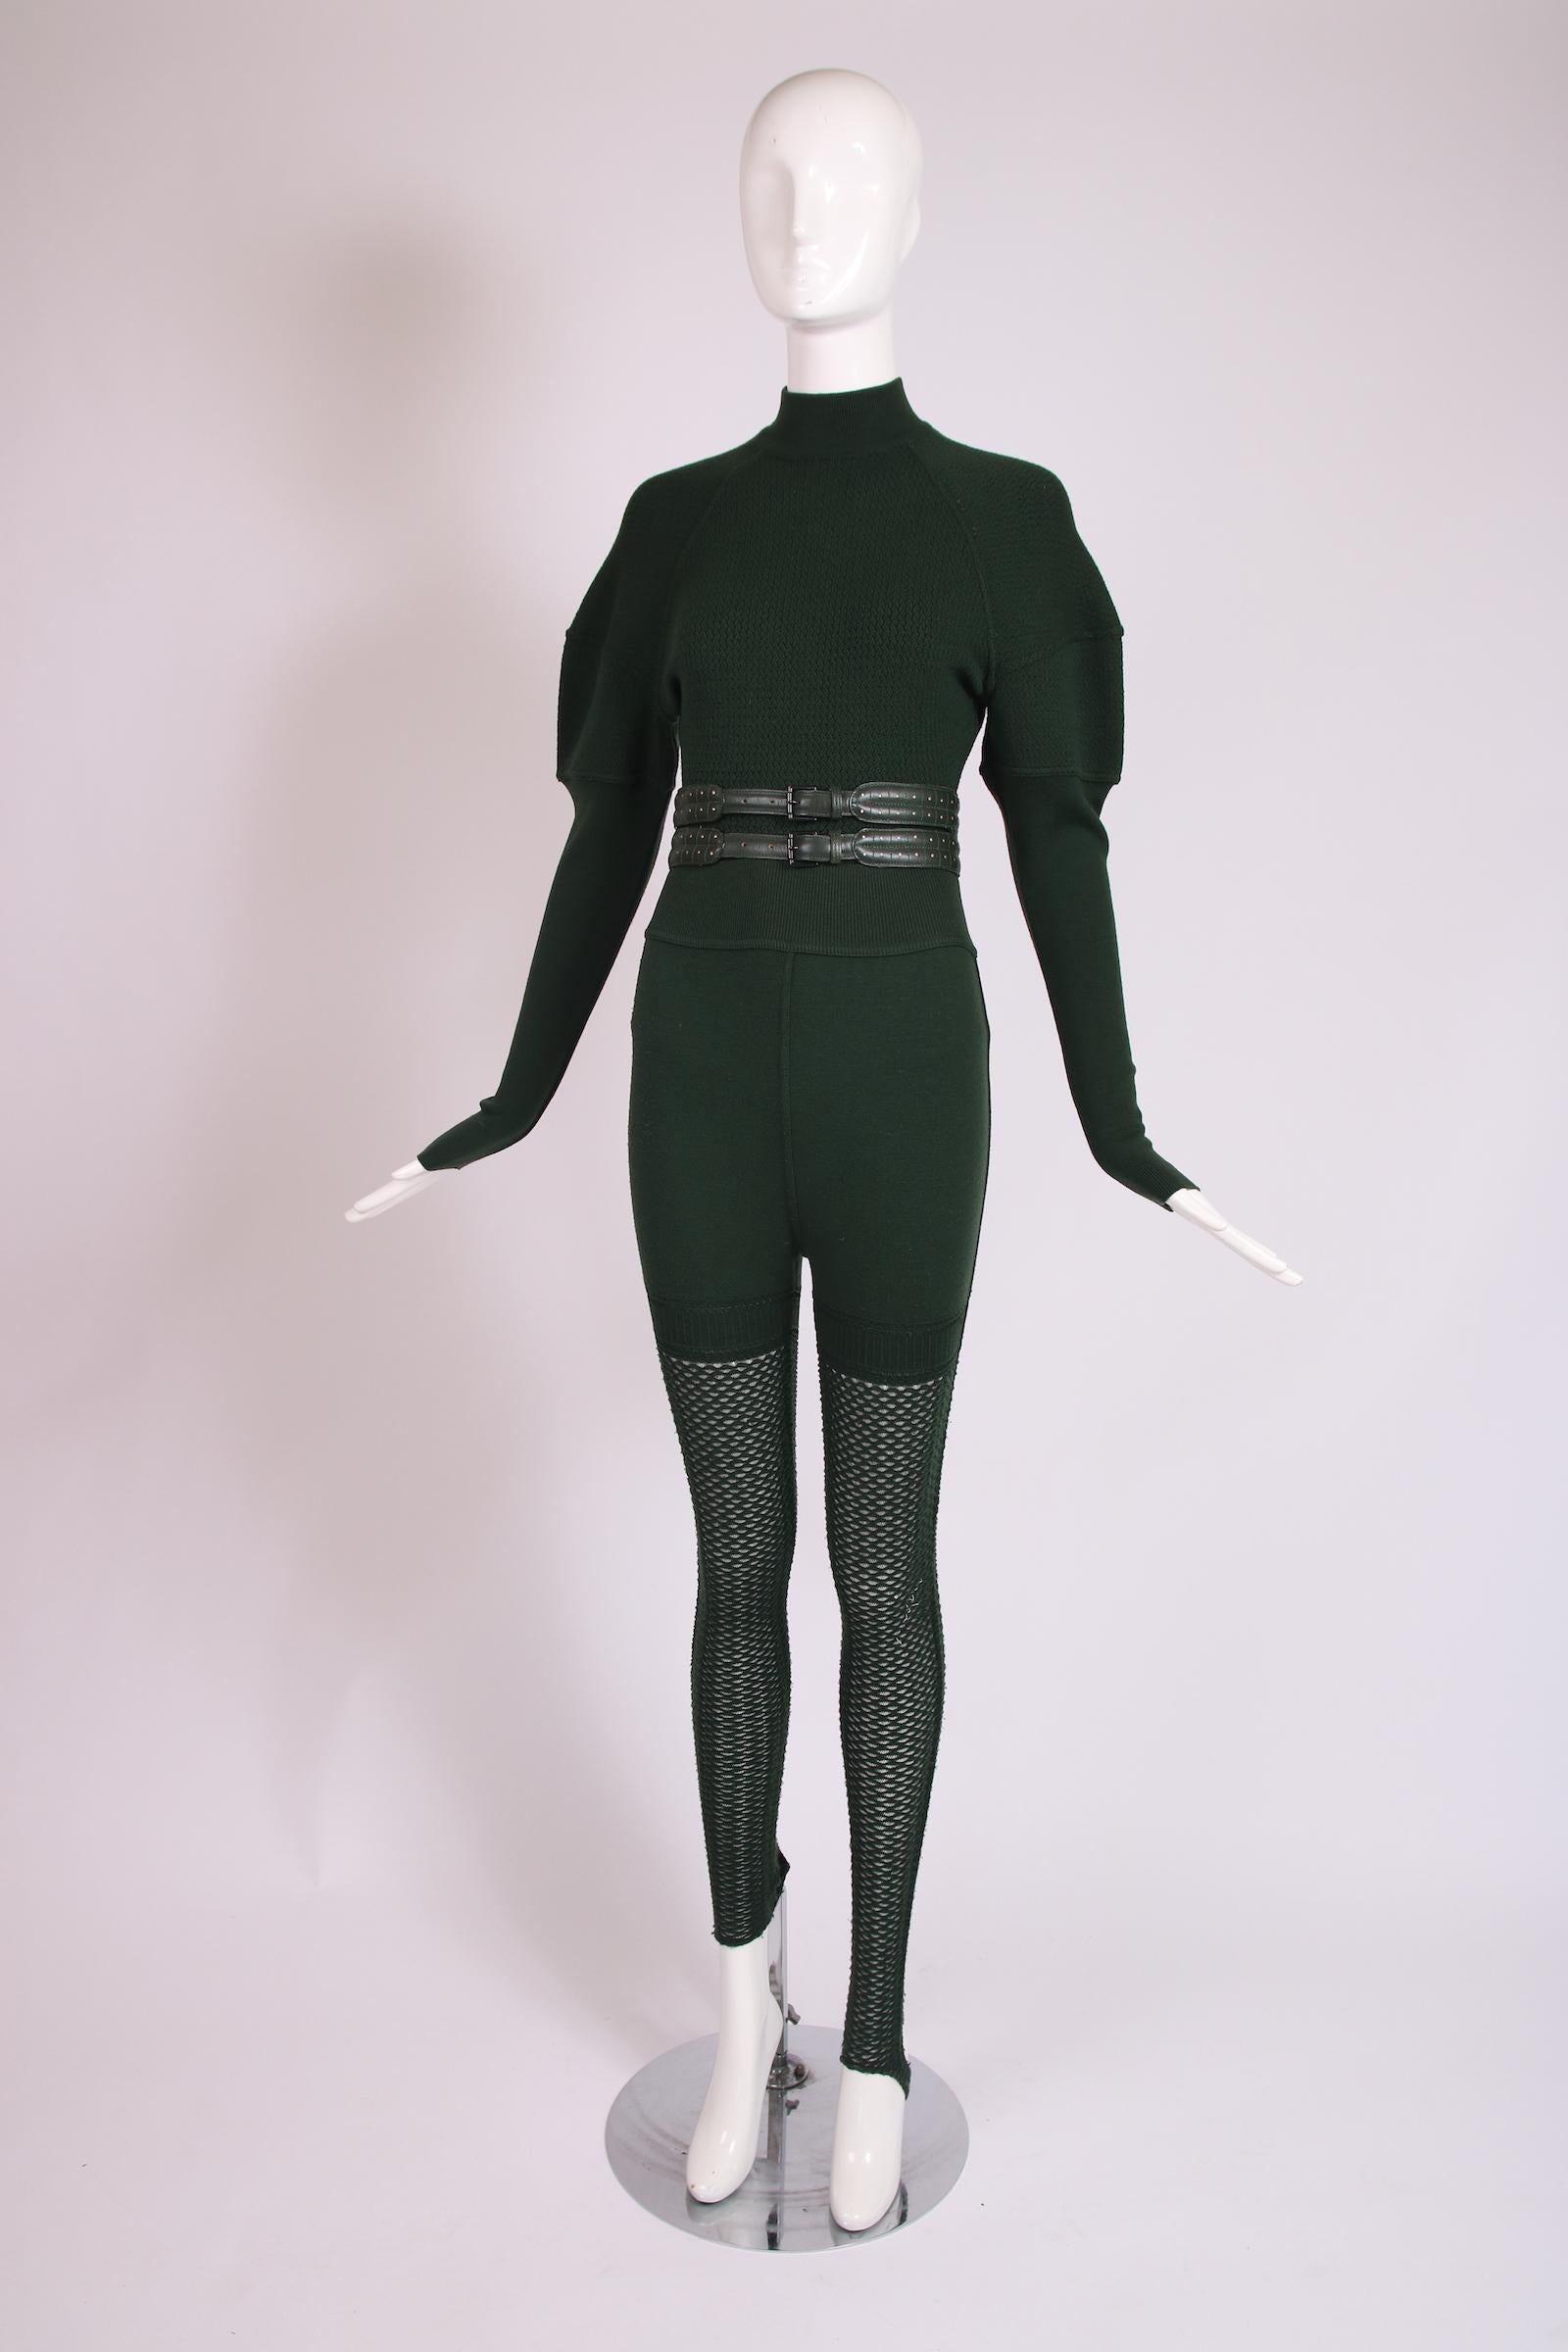 Anfang der 1990er Jahre Alaia grüner Stretch-Anzug aus Wolle und Viskose, Steigbügel-Leggings und Gürtel. Der Ganzkörperanzug kombiniert Wolle mit zwei verschiedenen Webarten und hat einen Rollkragen, dezente Hammelärmel und wird im Schritt mit